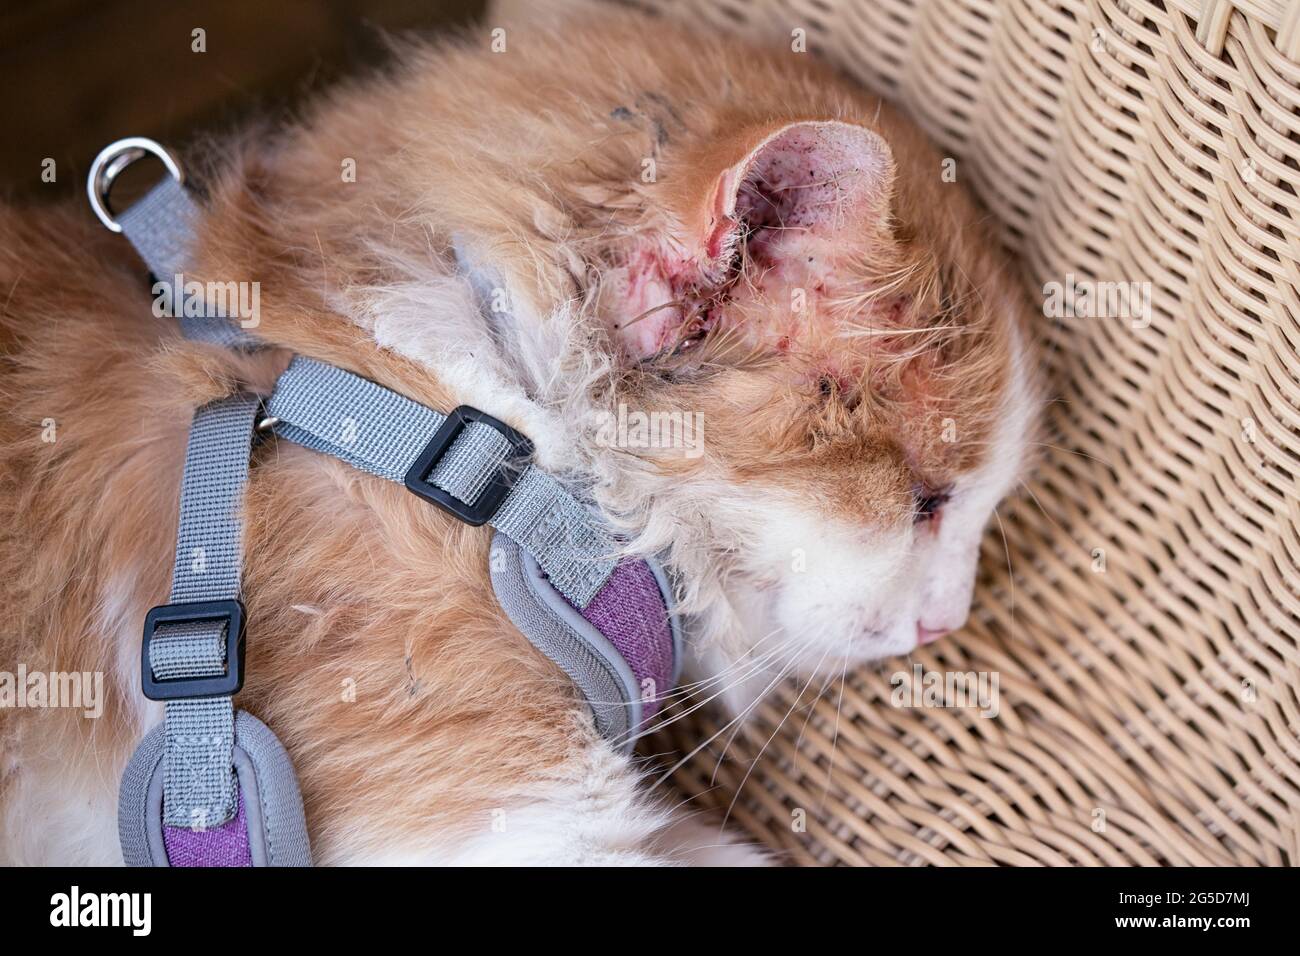 Le chat blessé épuisé avec un oeil gonflé et une oreille blessée, se trouve  en gros plan Photo Stock - Alamy